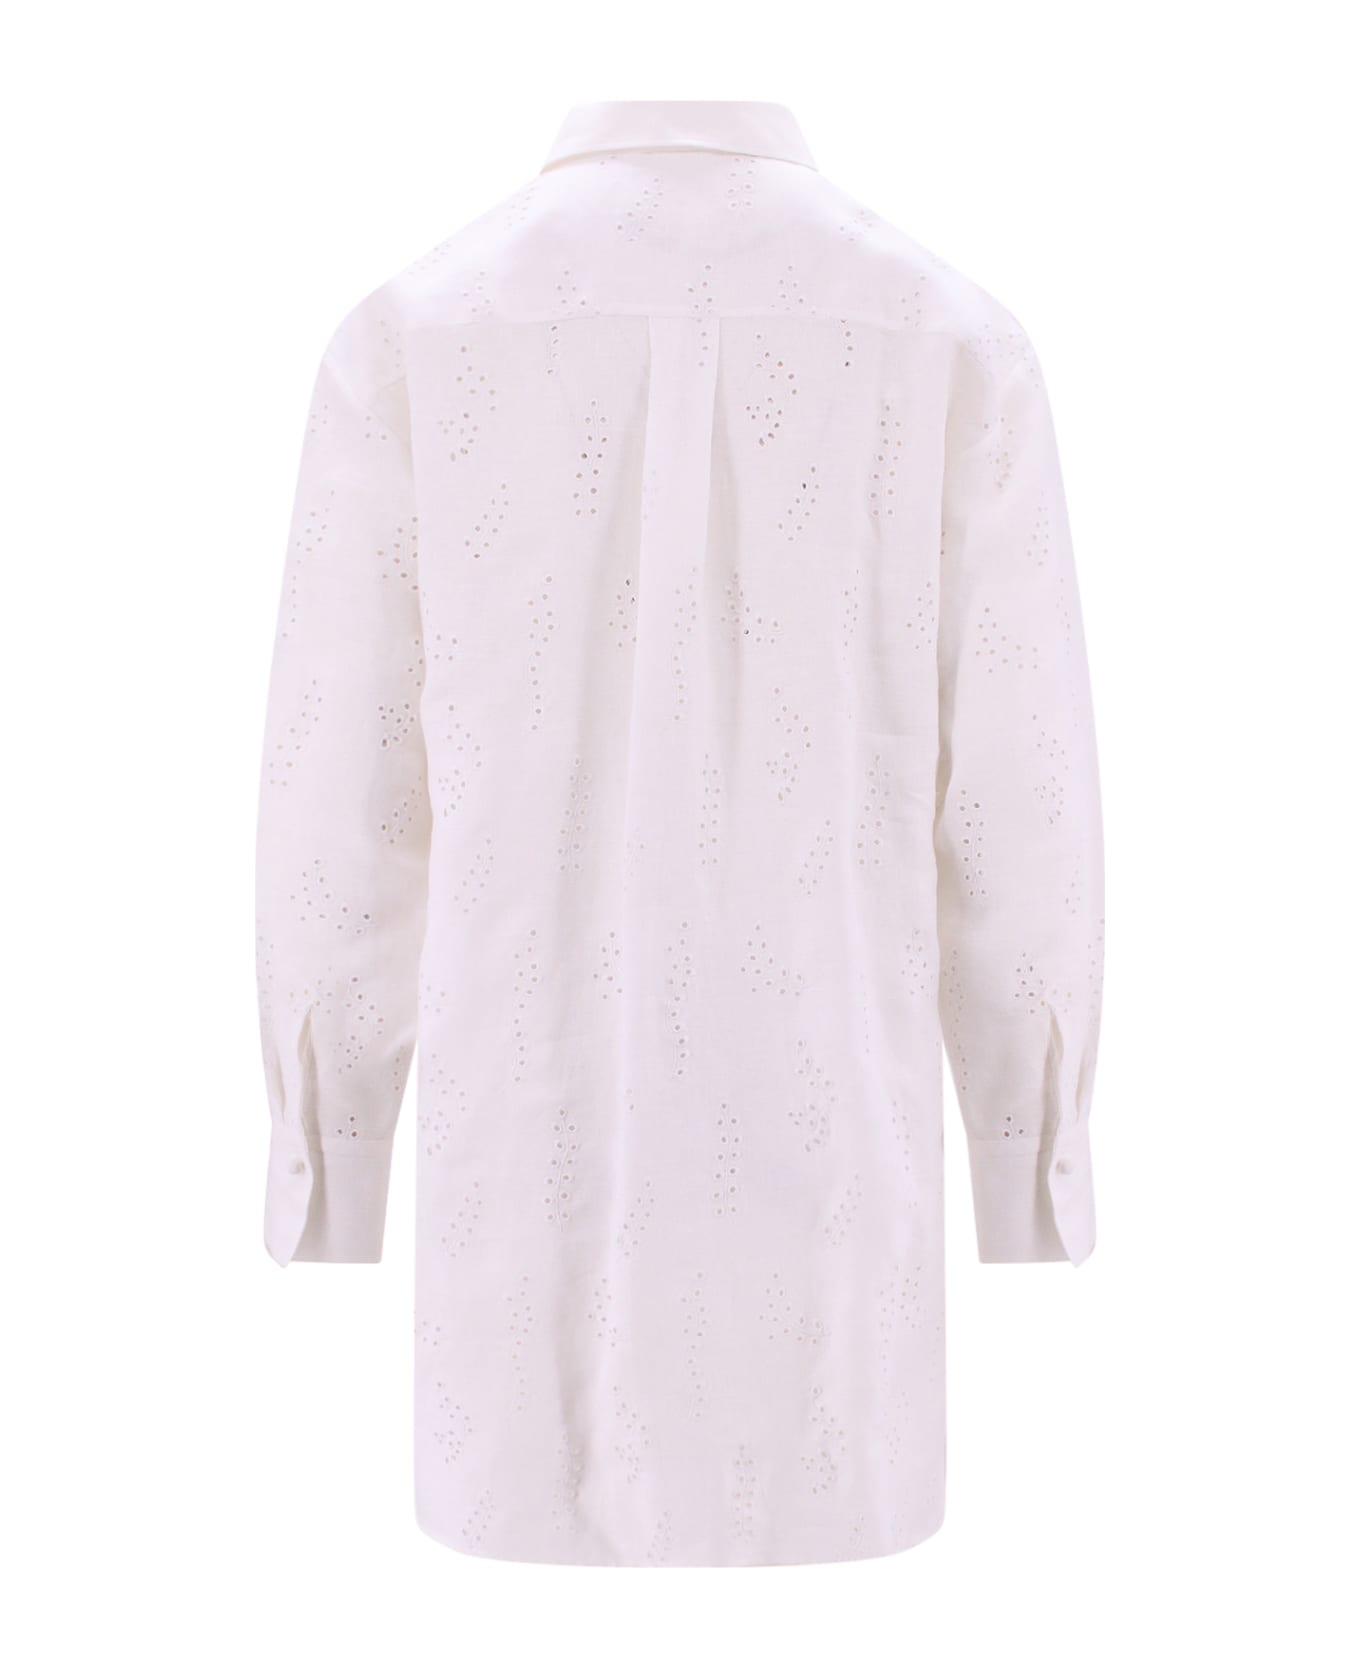 Chloé Dress - White シャツ